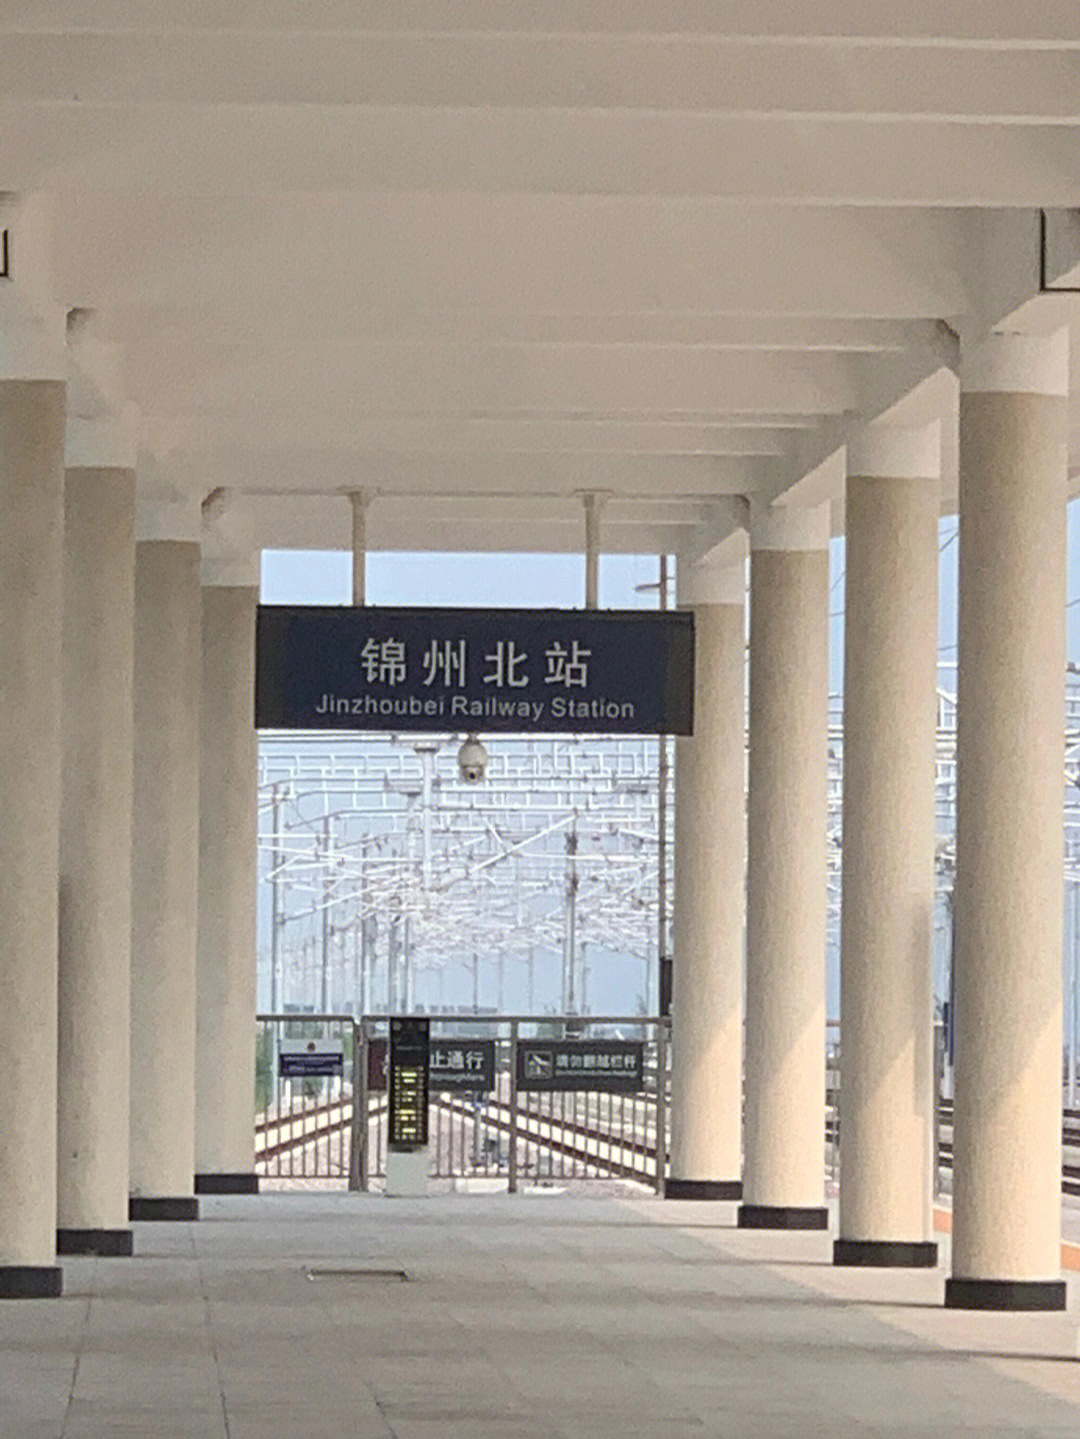 总的加起来算在锦州待了一天上午从赤峰坐高铁出发至锦州北站(价位